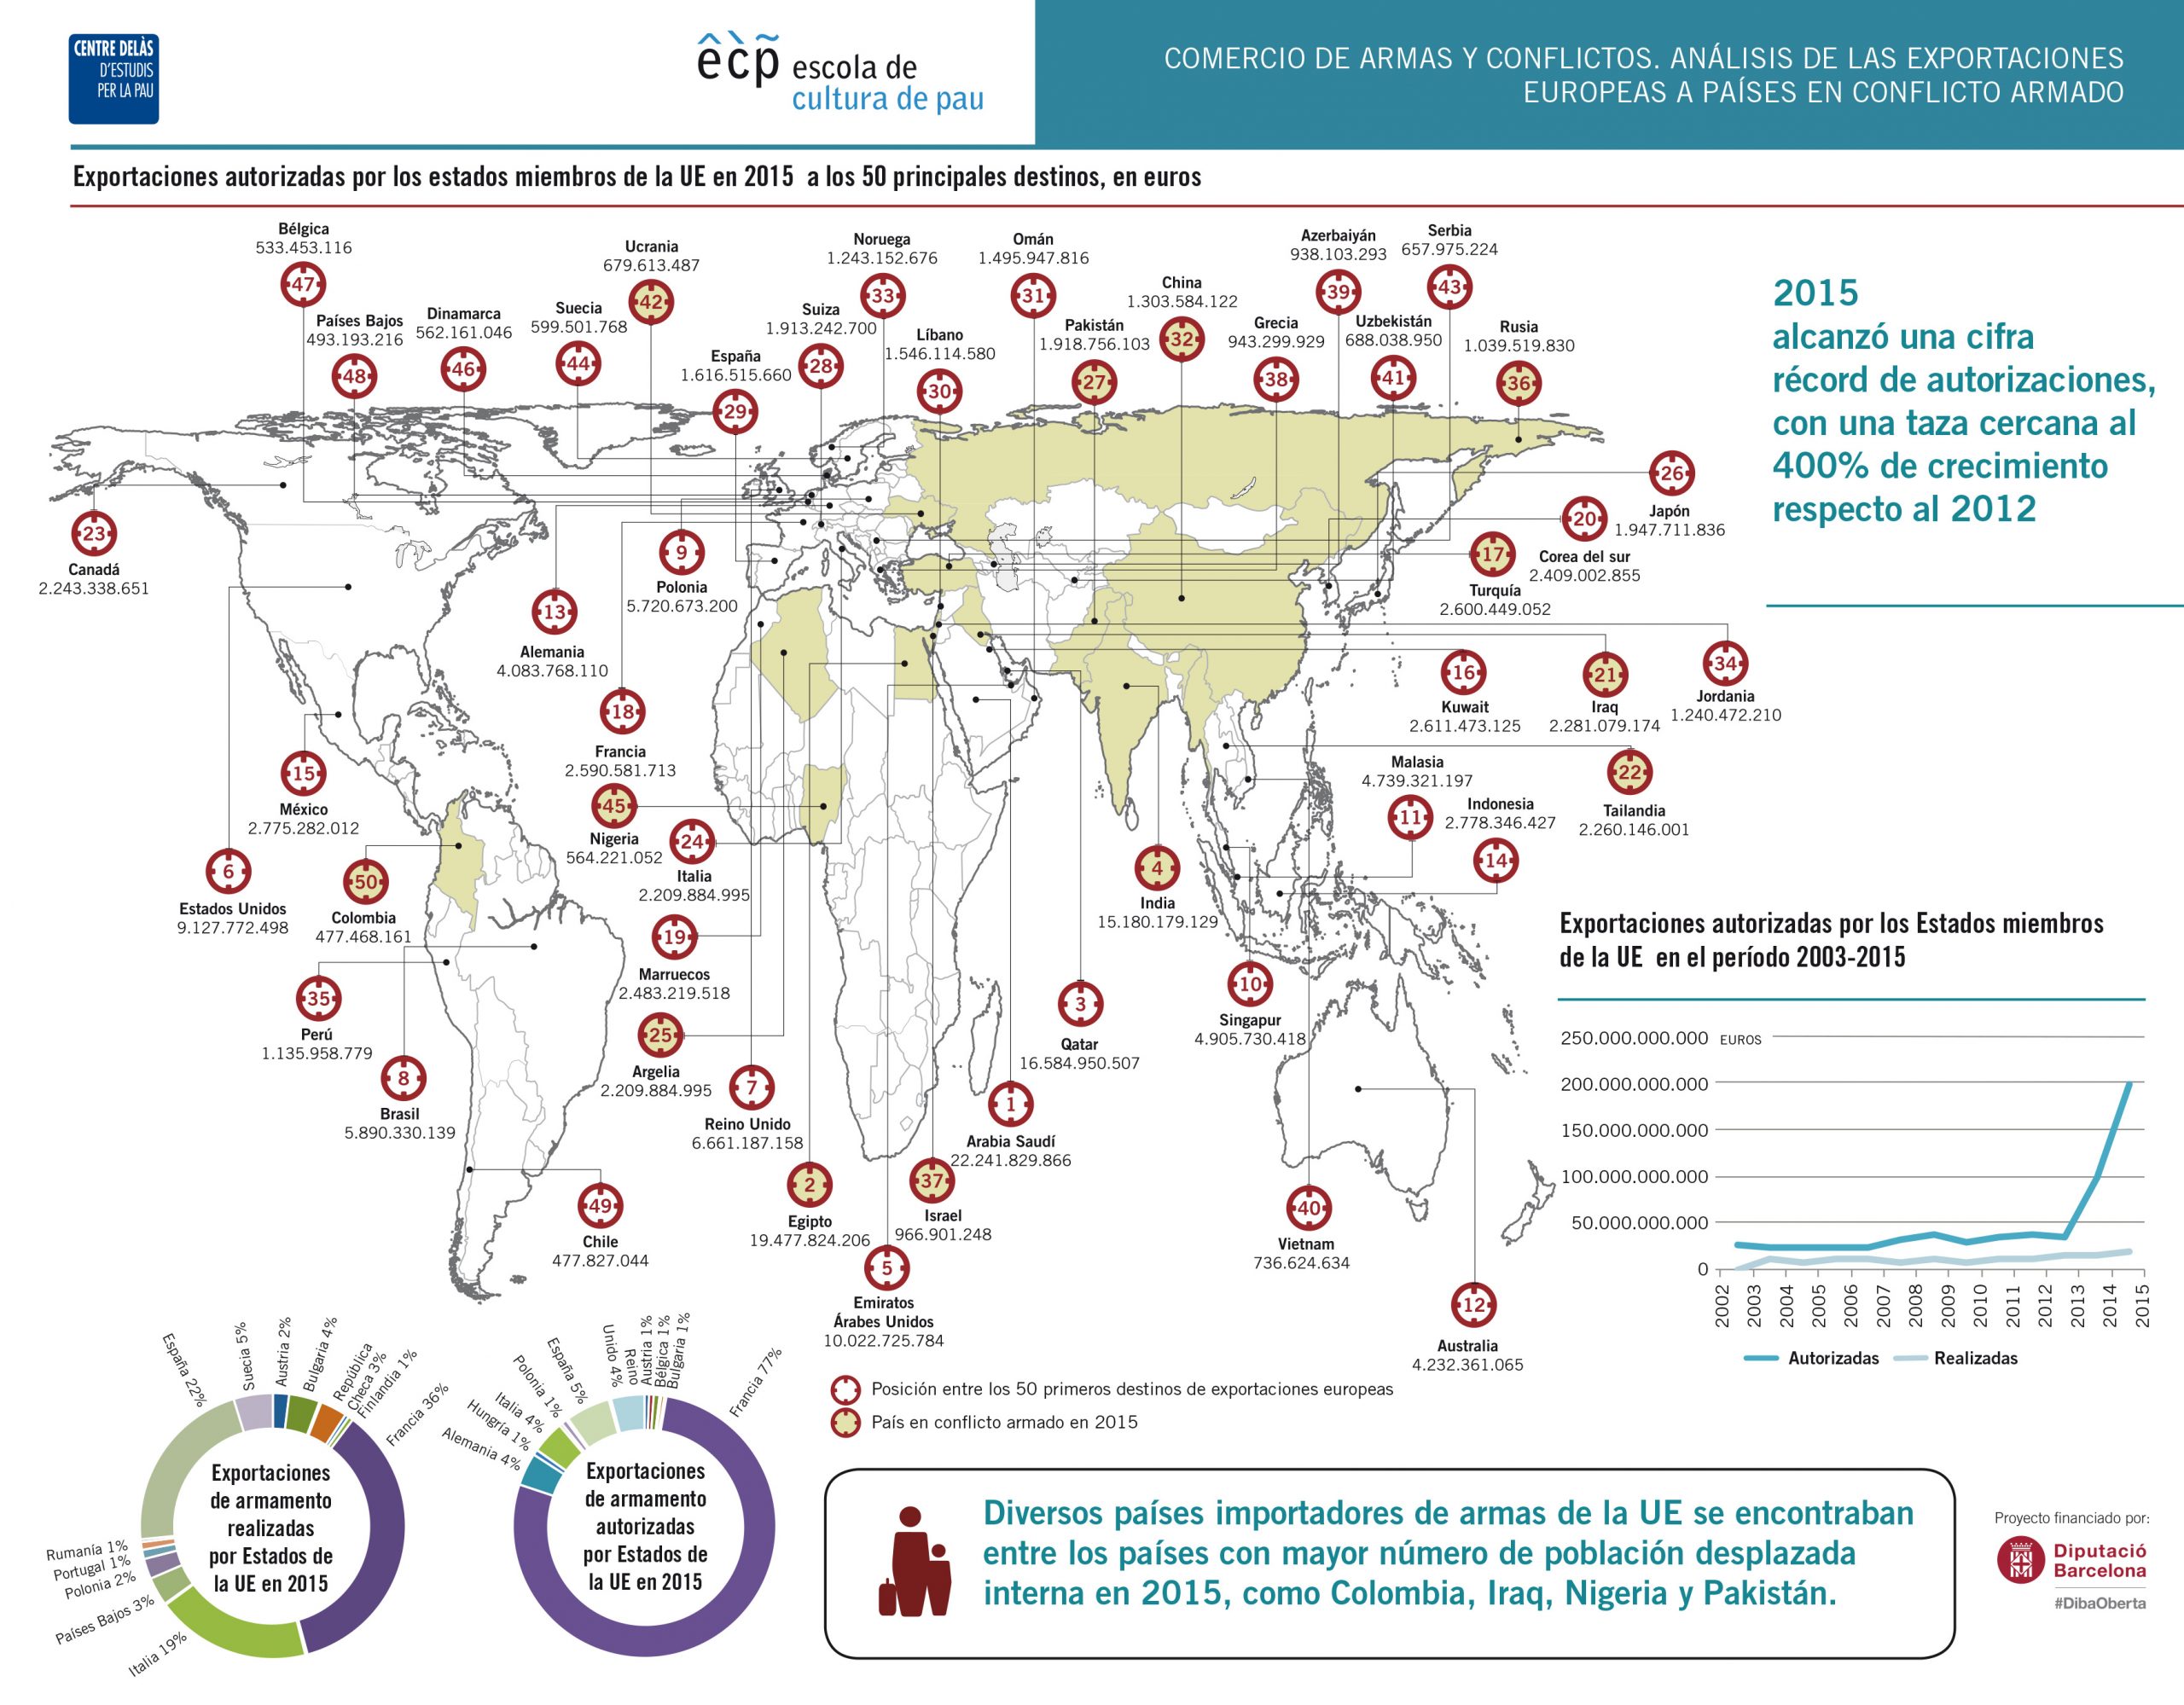 Infografia “Comercio de armas y conflictos. Análisis de las exportaciones de armas europeas a países en conflicto armado”